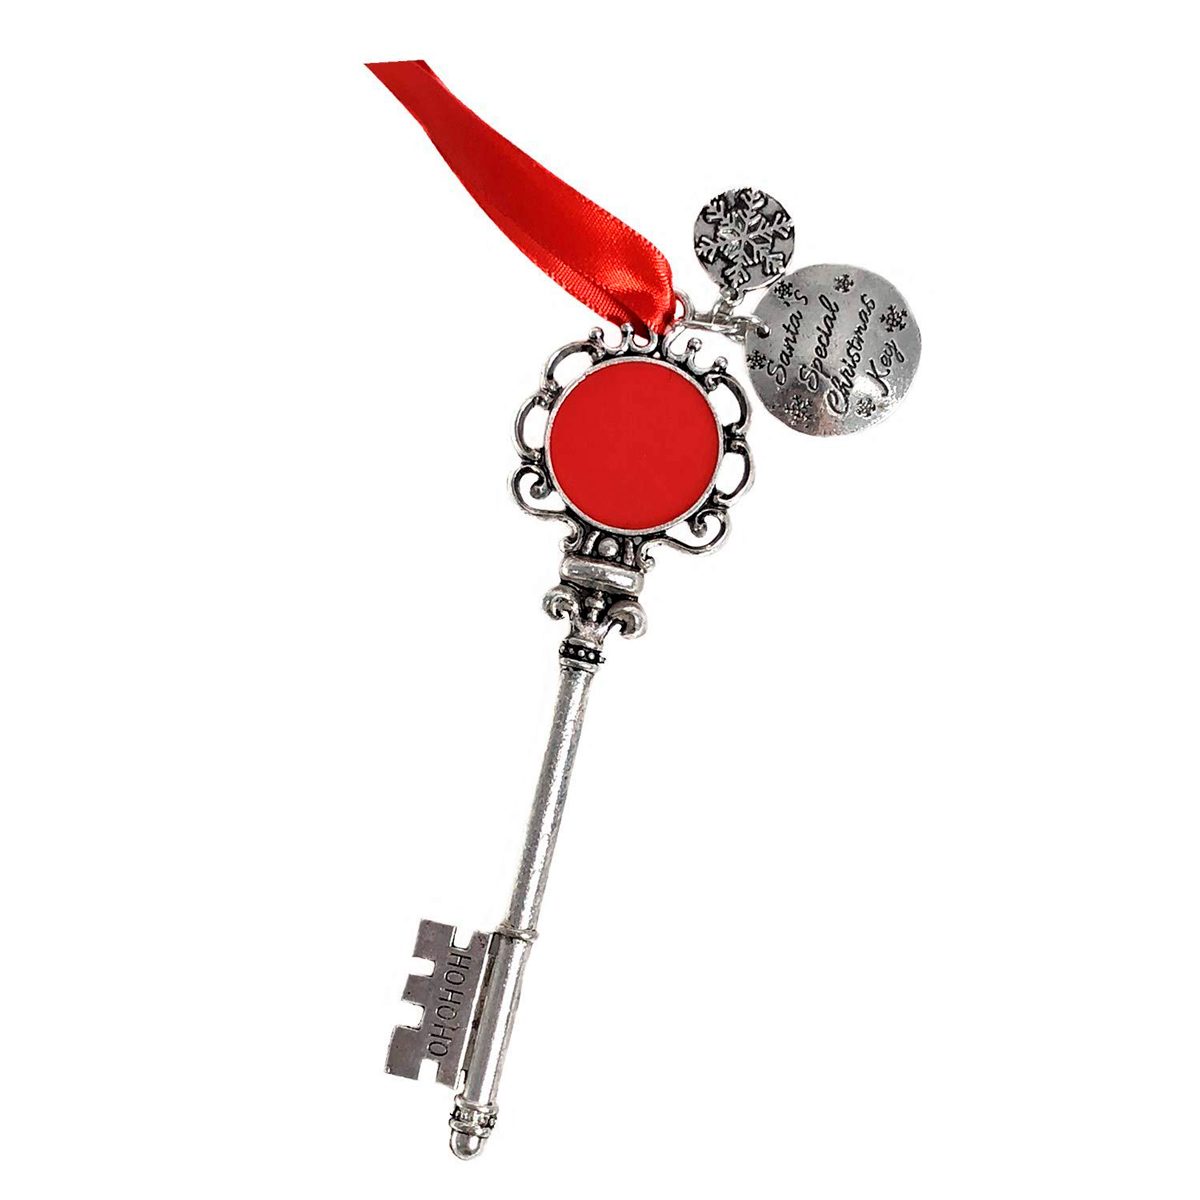  Woanger Santa's Key with Card Santa Key for No Chimney